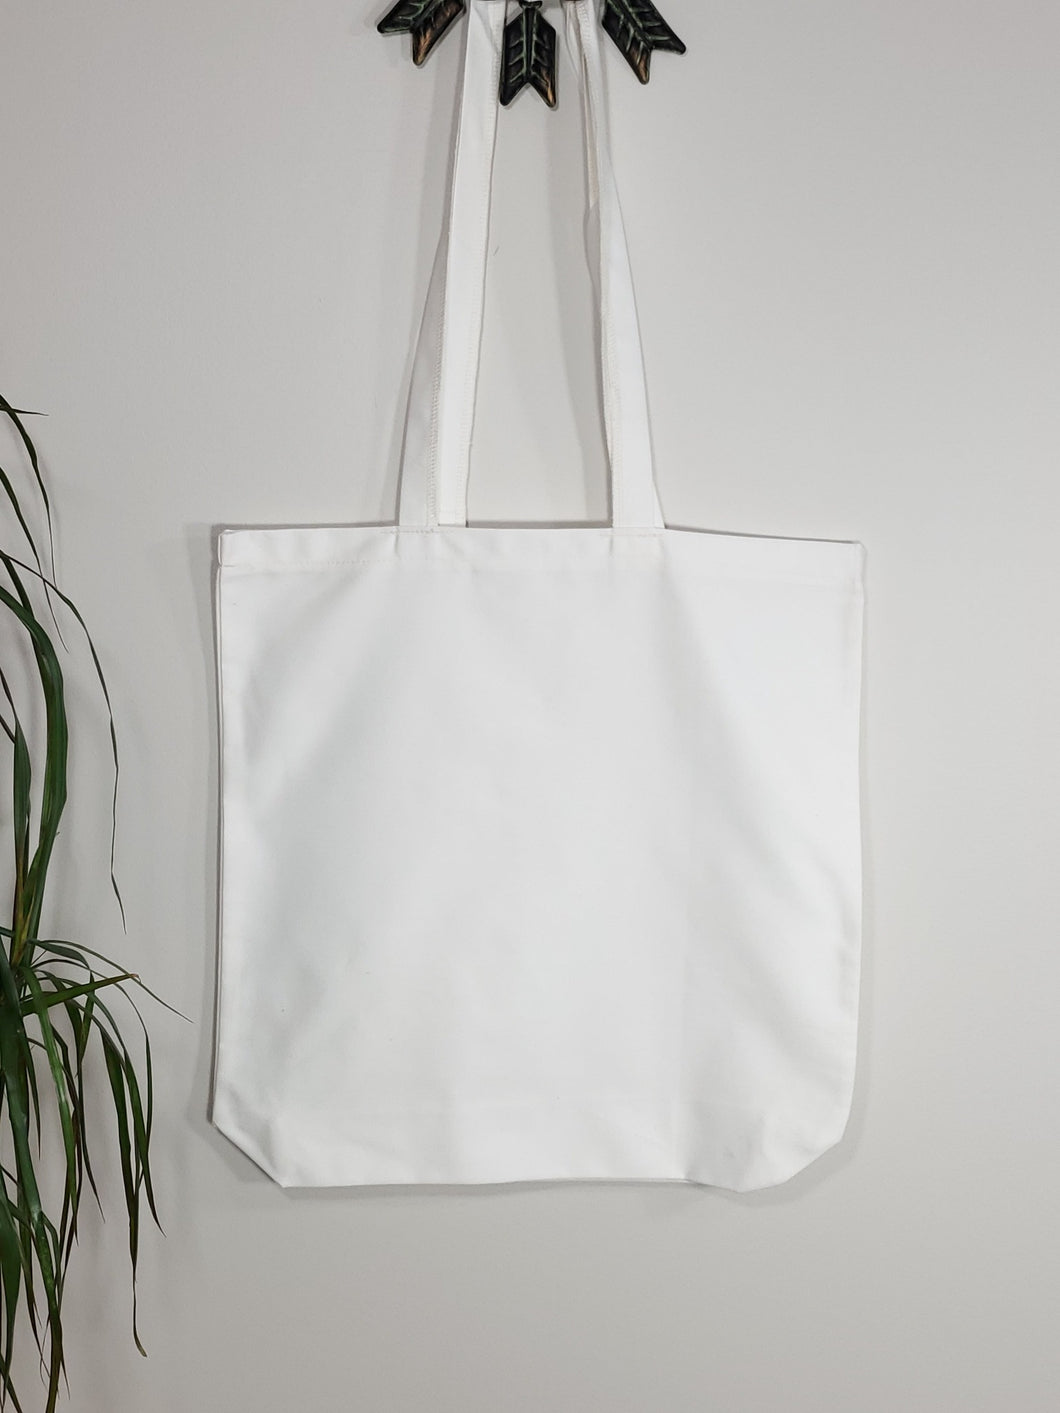 Market Tote Bag - Marshmallow White